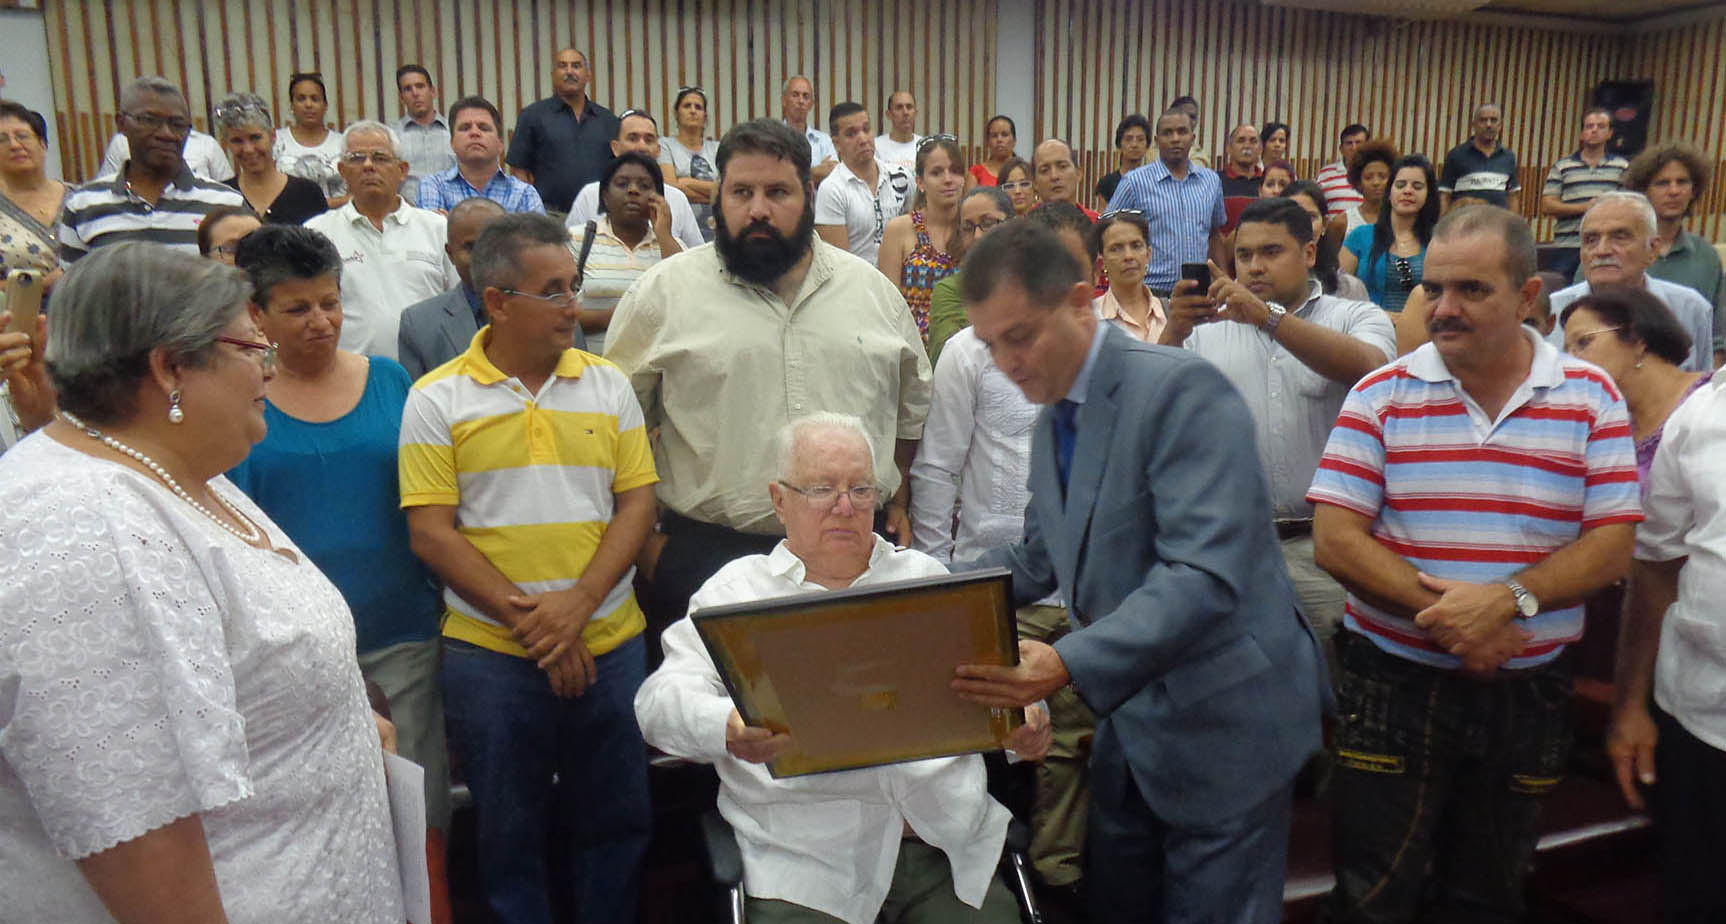 El intelectual y político cubano Armando Hart Dávalos recibe el título de Doctor Honoris Causa en Ciencias Sociales por la Universidad de Pinar del Río Hermanos Saíz Montes de Oca (UPR).